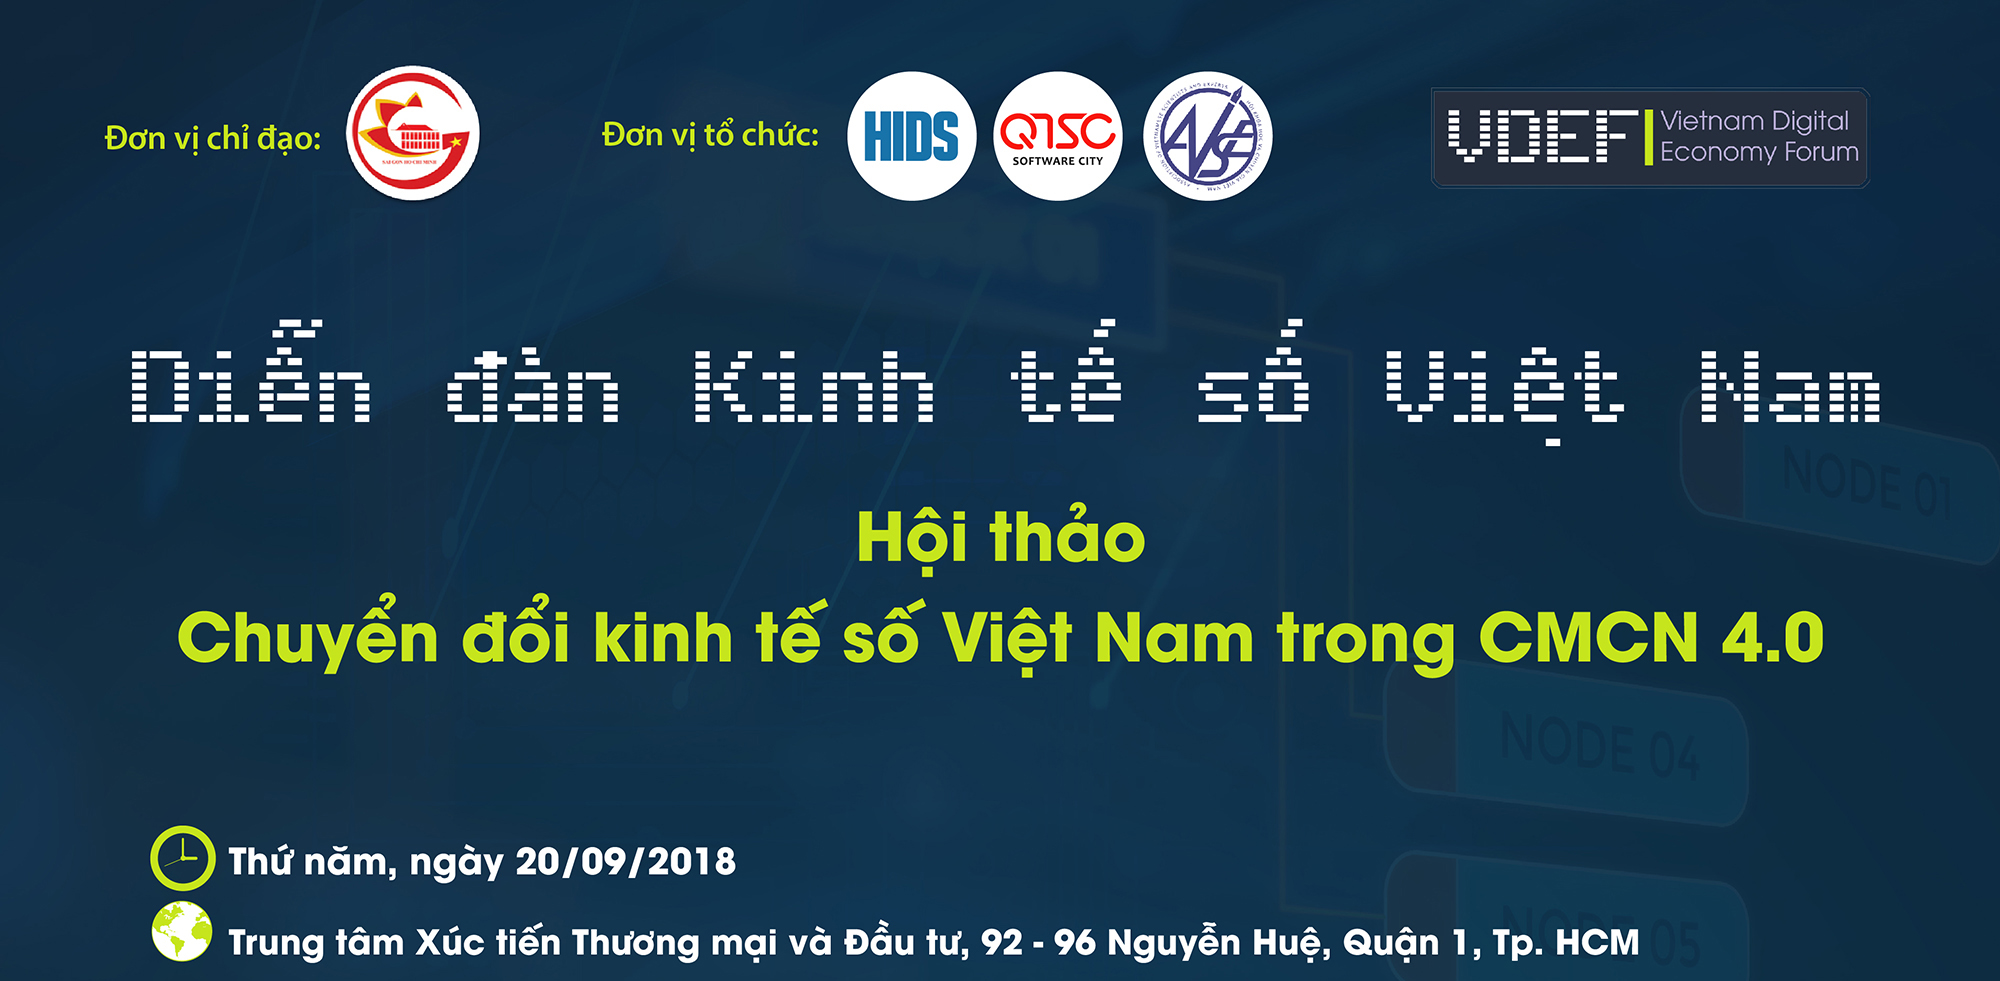 Mời tham dự Hội thảo “Chuyển đổi kinh tế số Việt Nam trong CMCN 4.0”